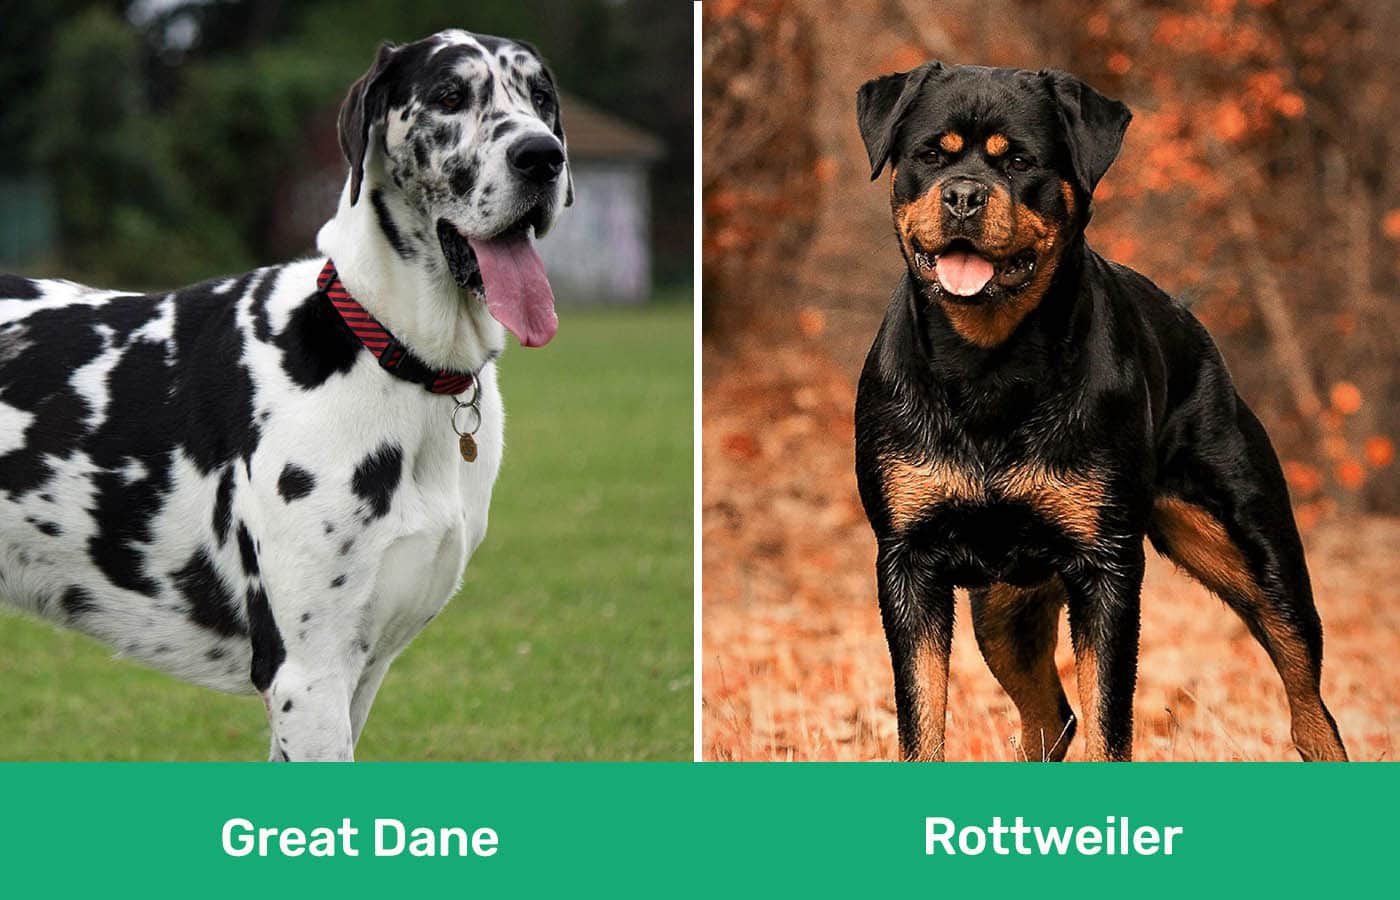 Great Dane vs Rottweiler side by side